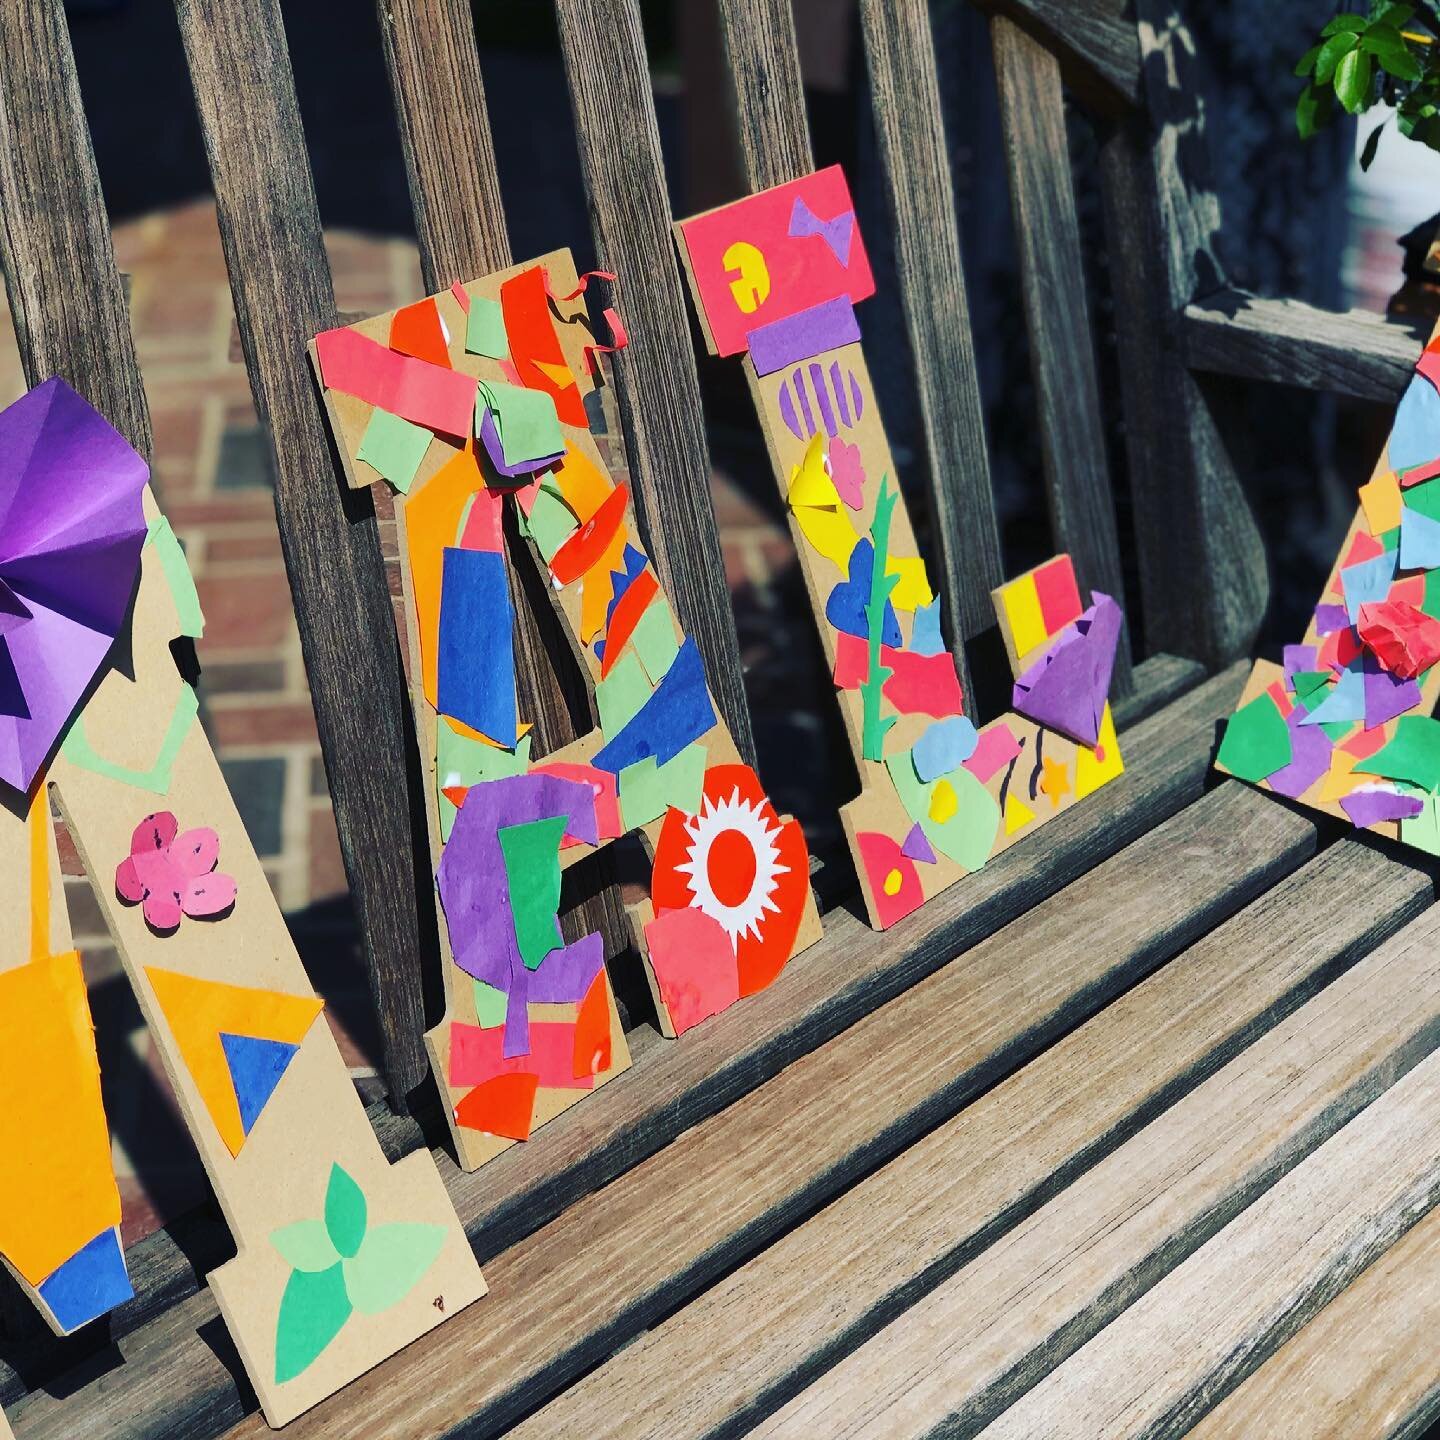 Masterpieces inspired by Matisse #backyardartclasses #outoftheboxartclasses